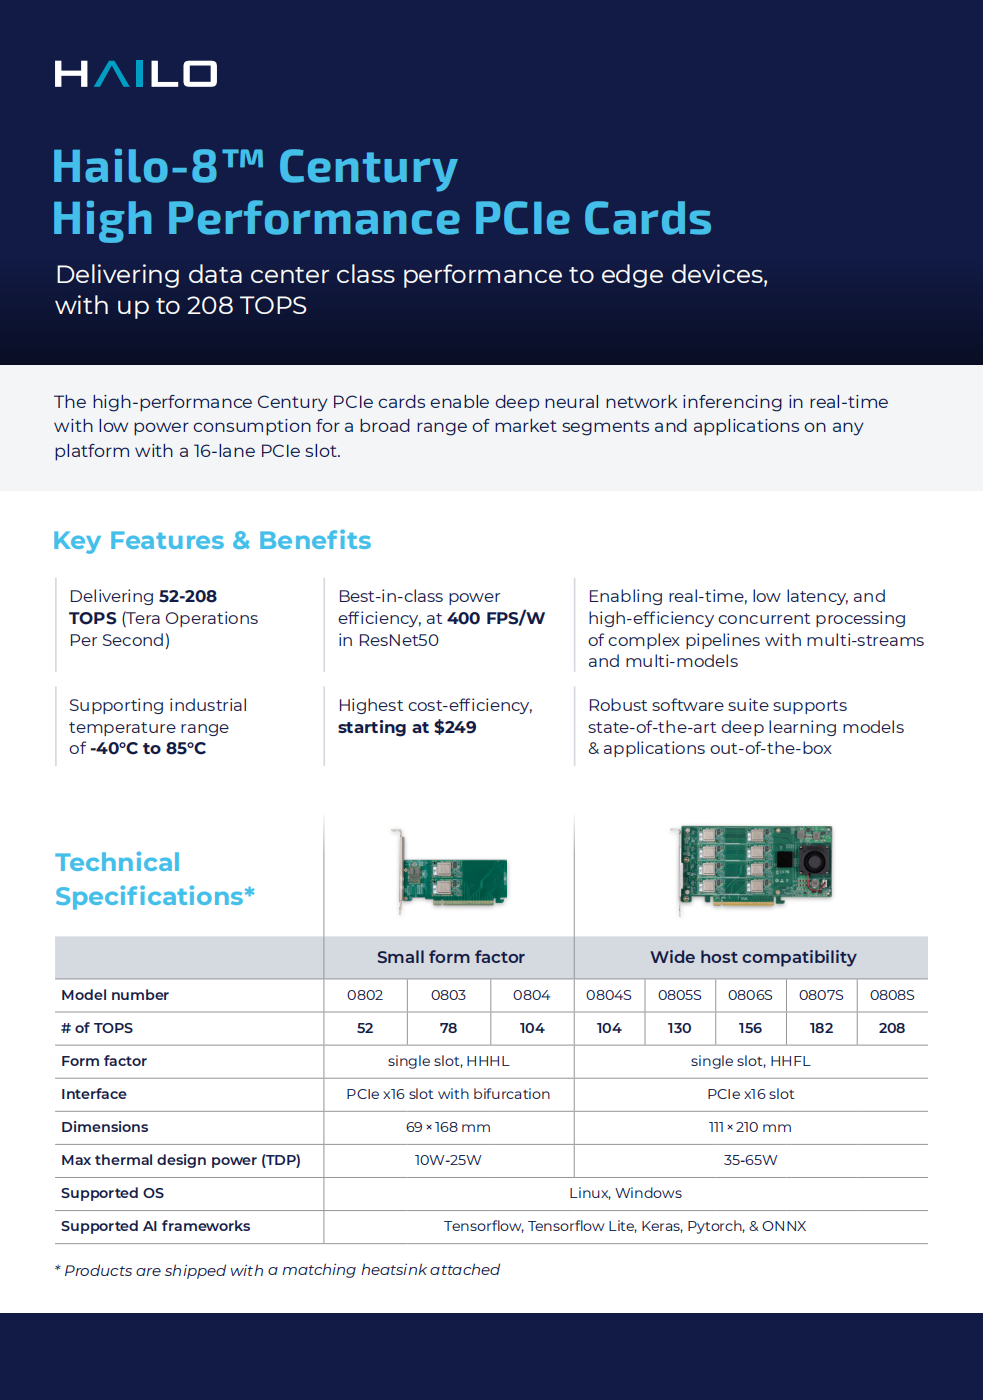 Hailo-8 Century高性能PCIe卡为边缘设备带来高达208 TOPS的数据中心级性能